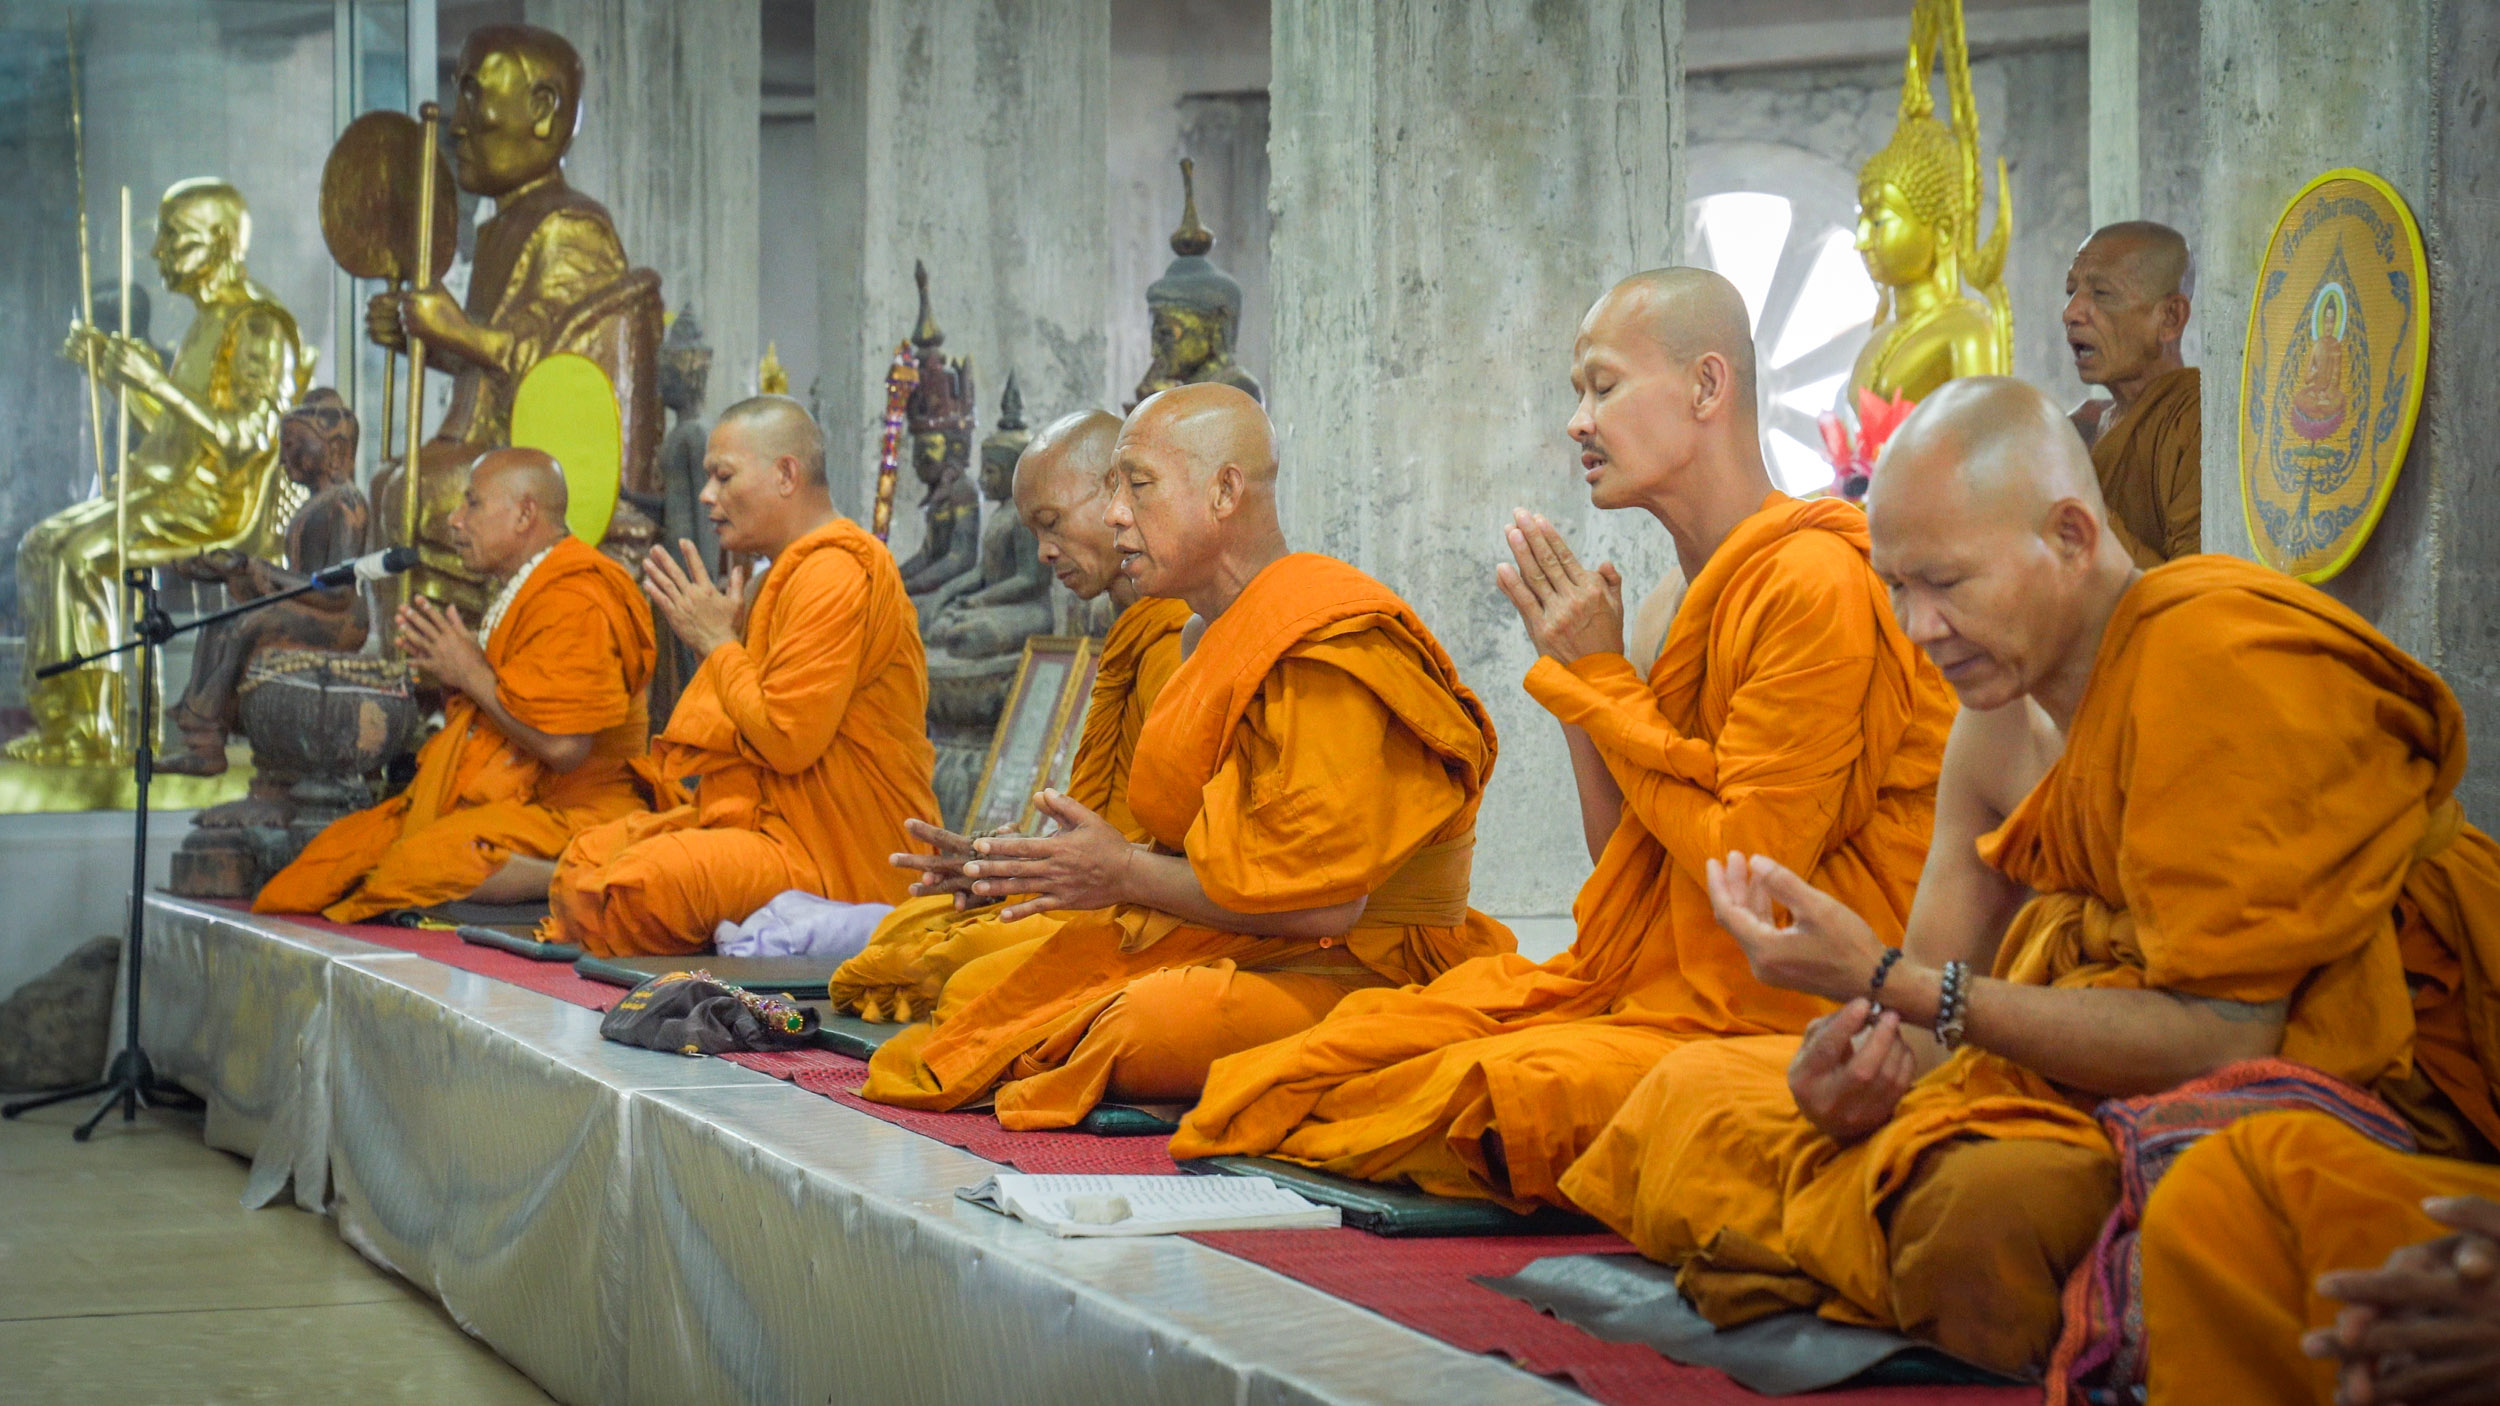 Phuket Island Morning Guided Tour with Big Buddha